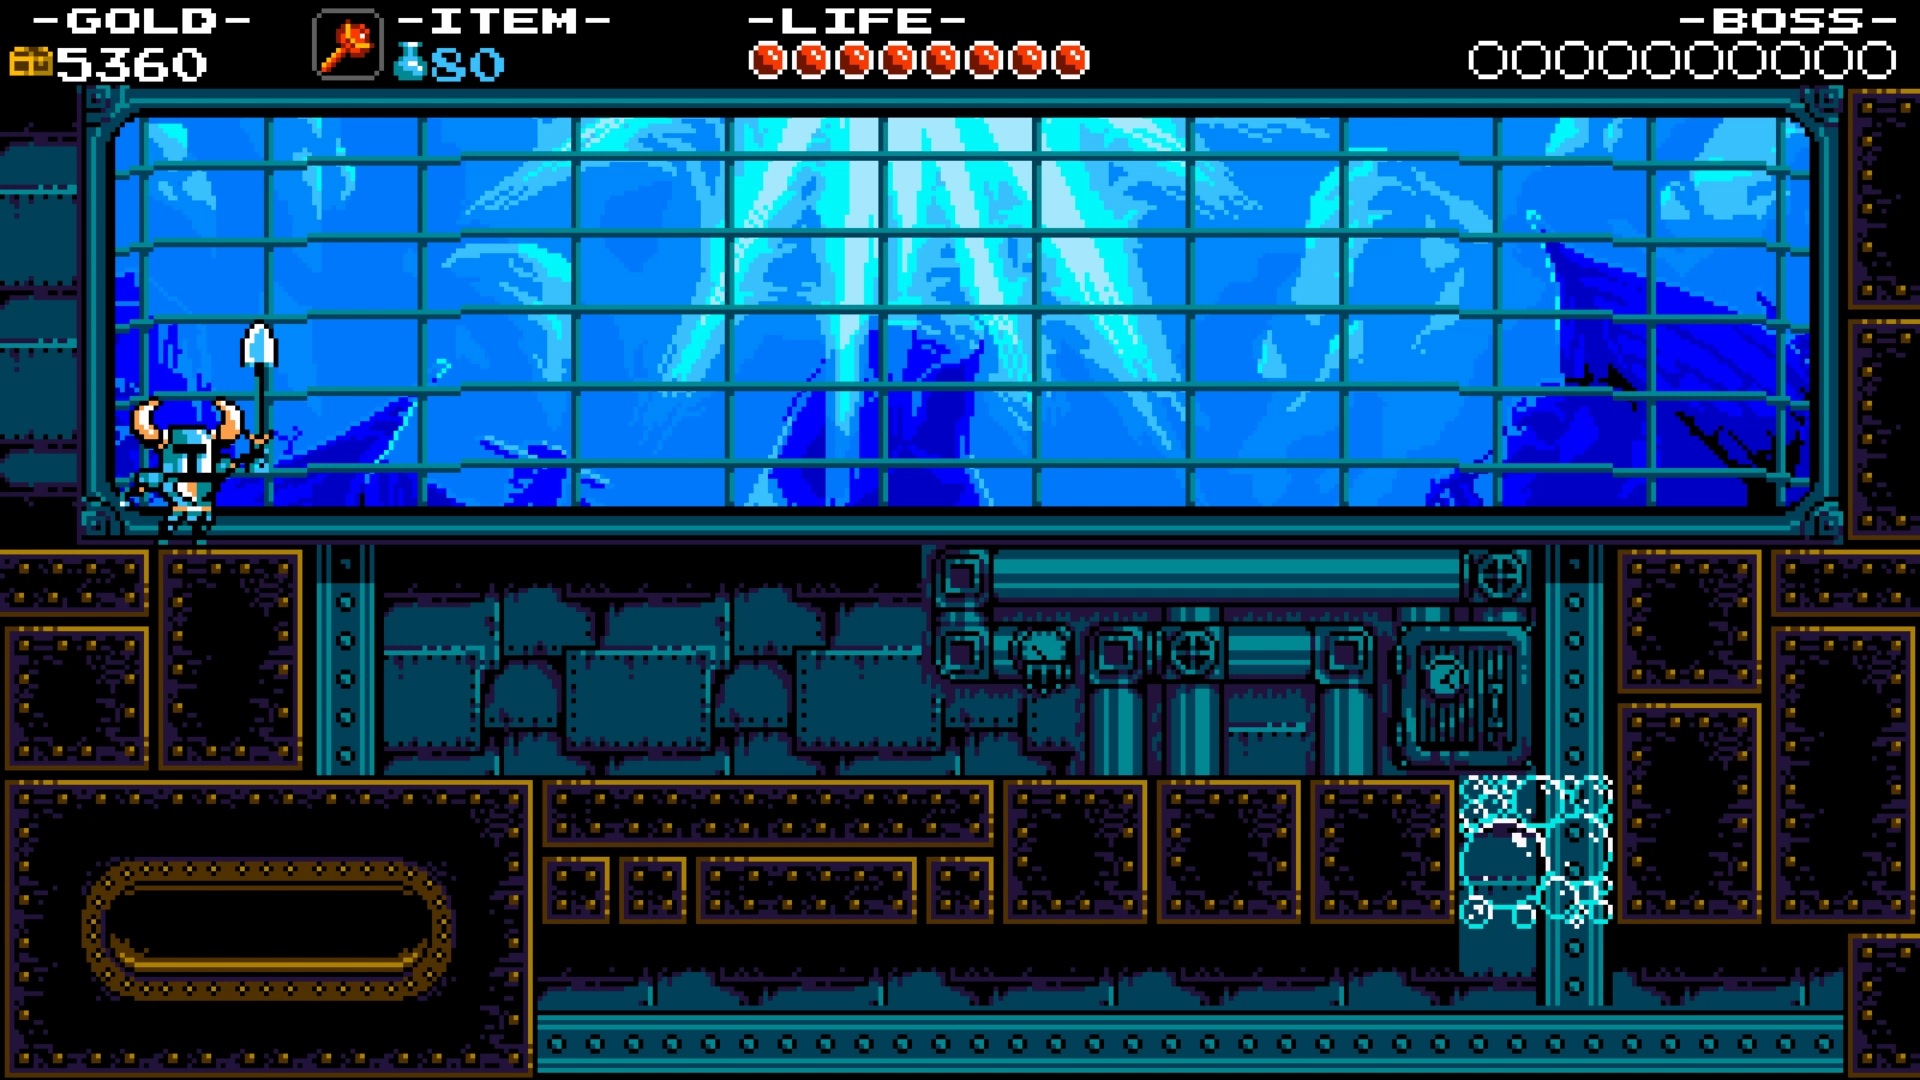 O azul profundo do fundo deste cenário não era possível no NES...